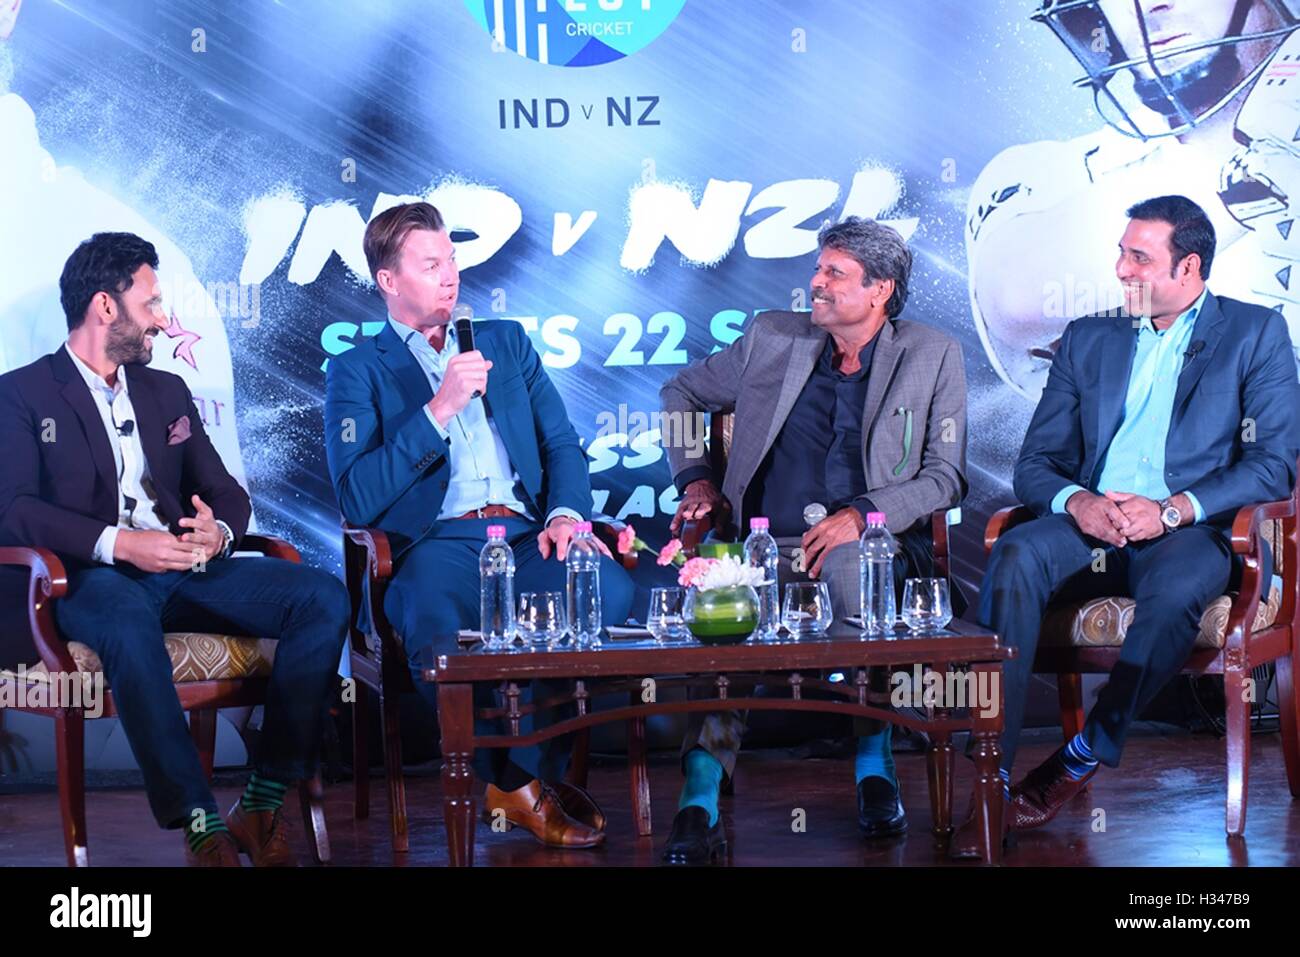 Jatin Sapru Brett Lee capitaine indien Kapil Dev VVS Laxman panel discussion à venir Inde vs Nouvelle-Zélande série de tests New Delhi Inde Banque D'Images